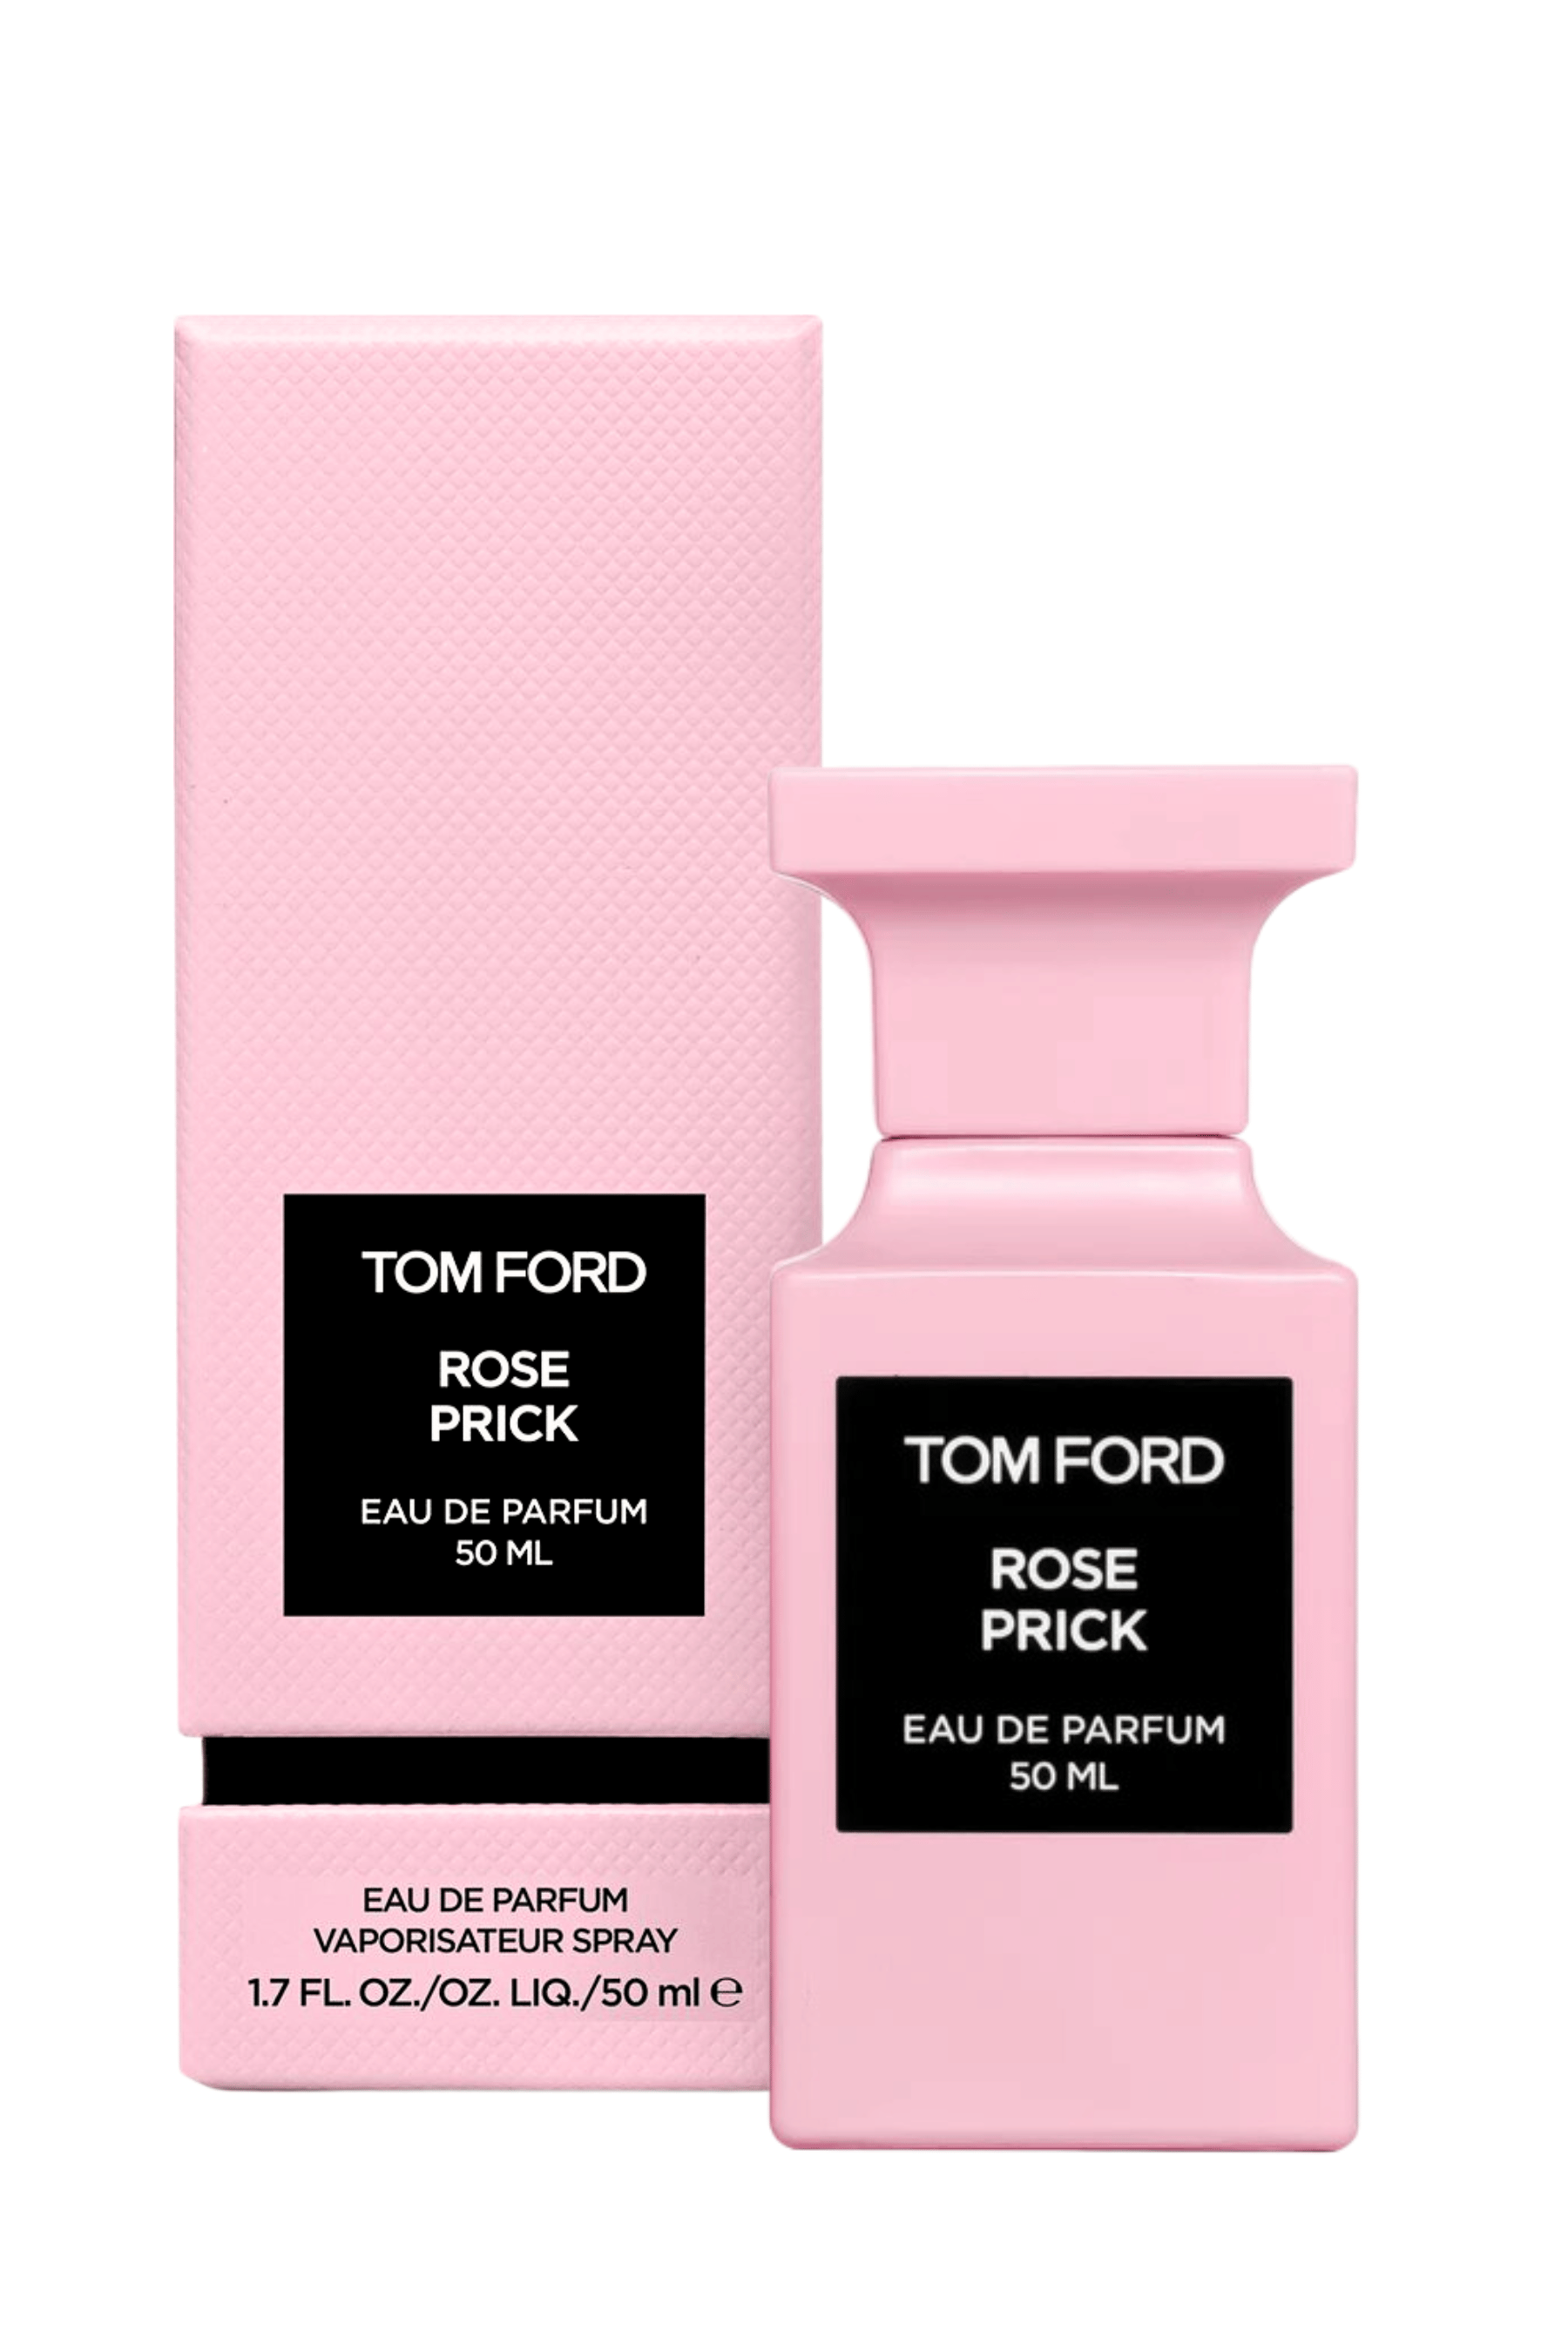 ROSE PRICK EAU DE PARFUM